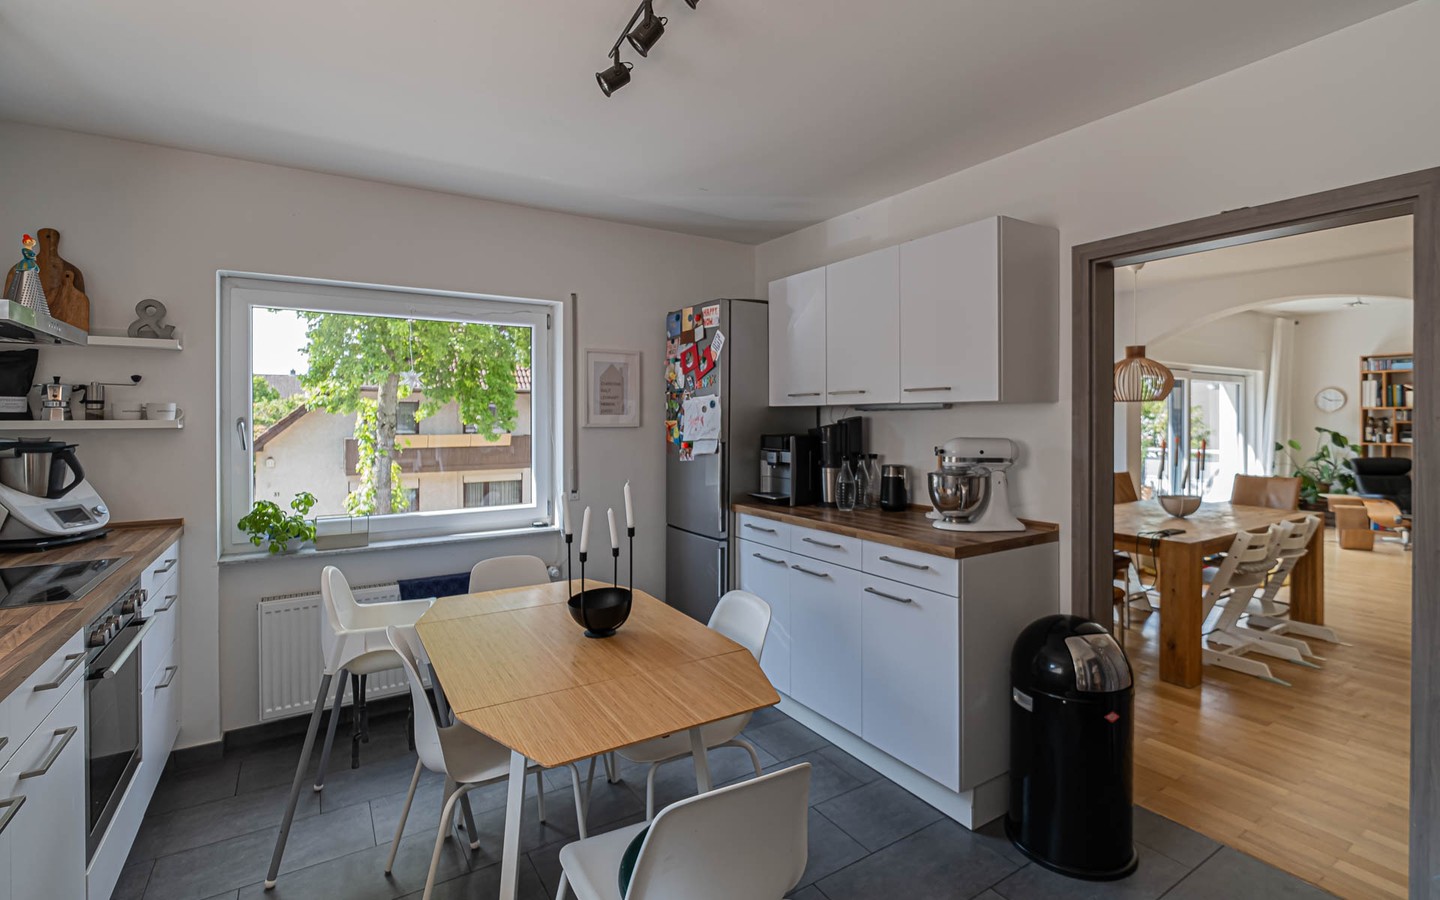 Küche - Fantastische Vierzimmerwohnung im 1 OG mit Balkon und Garten, und zusätzlichen Räumen im Souterrain